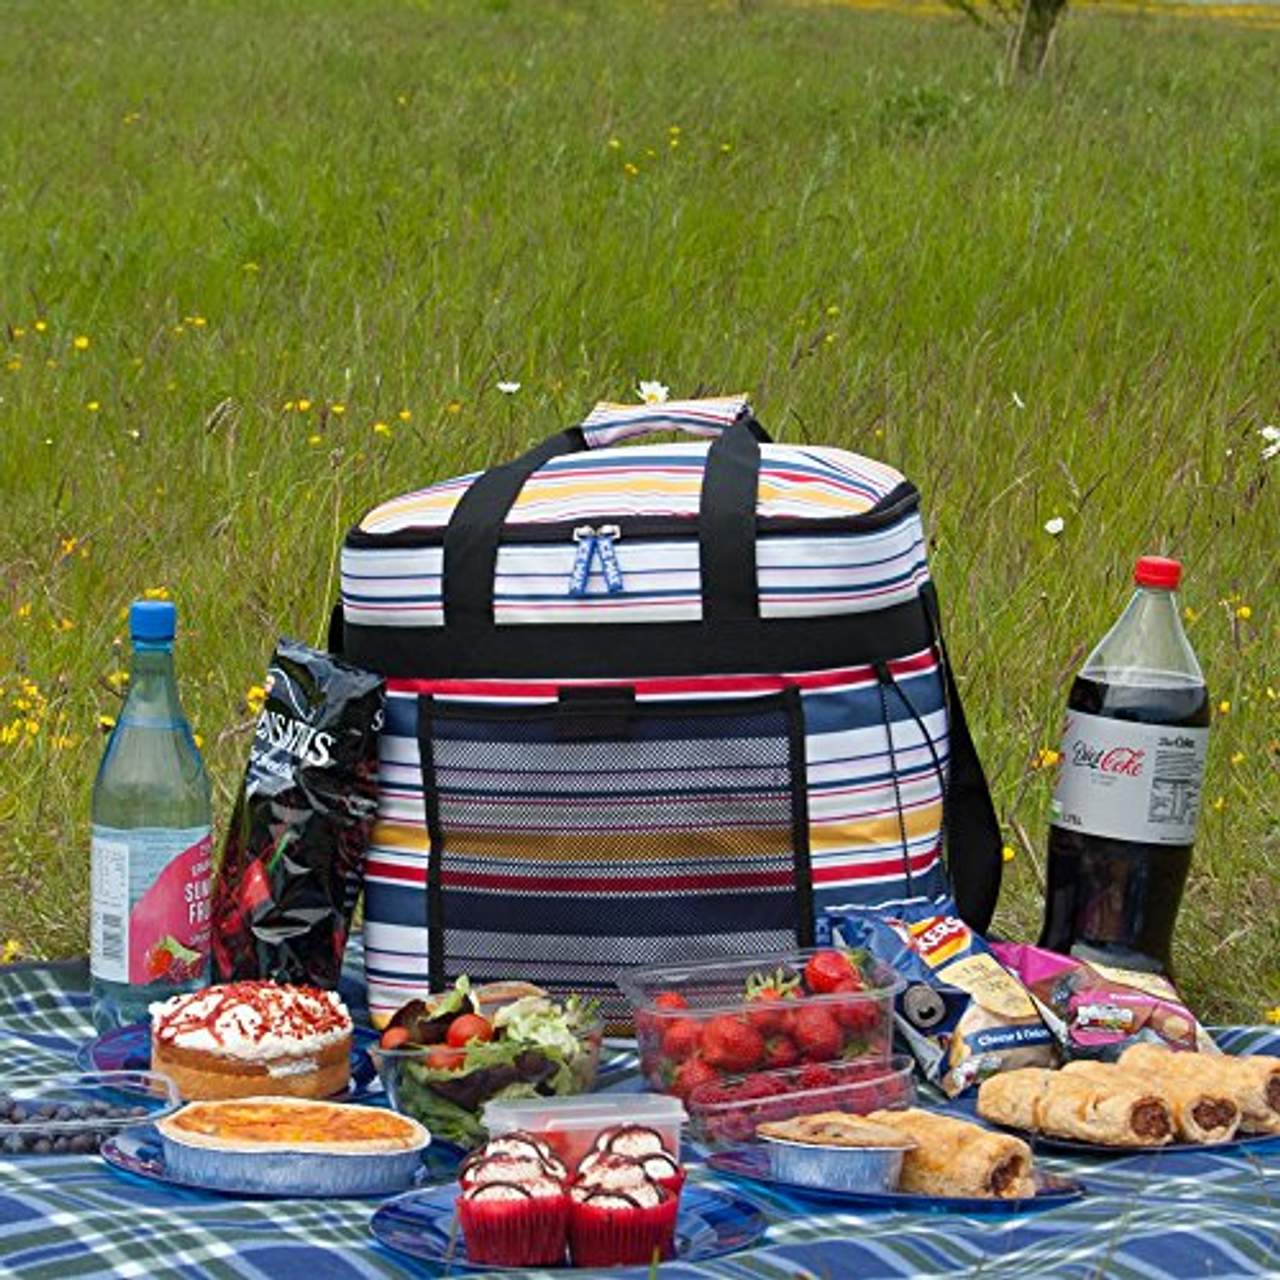 Ice Max Große Picknick Kühltasche Kühlbox Picknick Tasche-